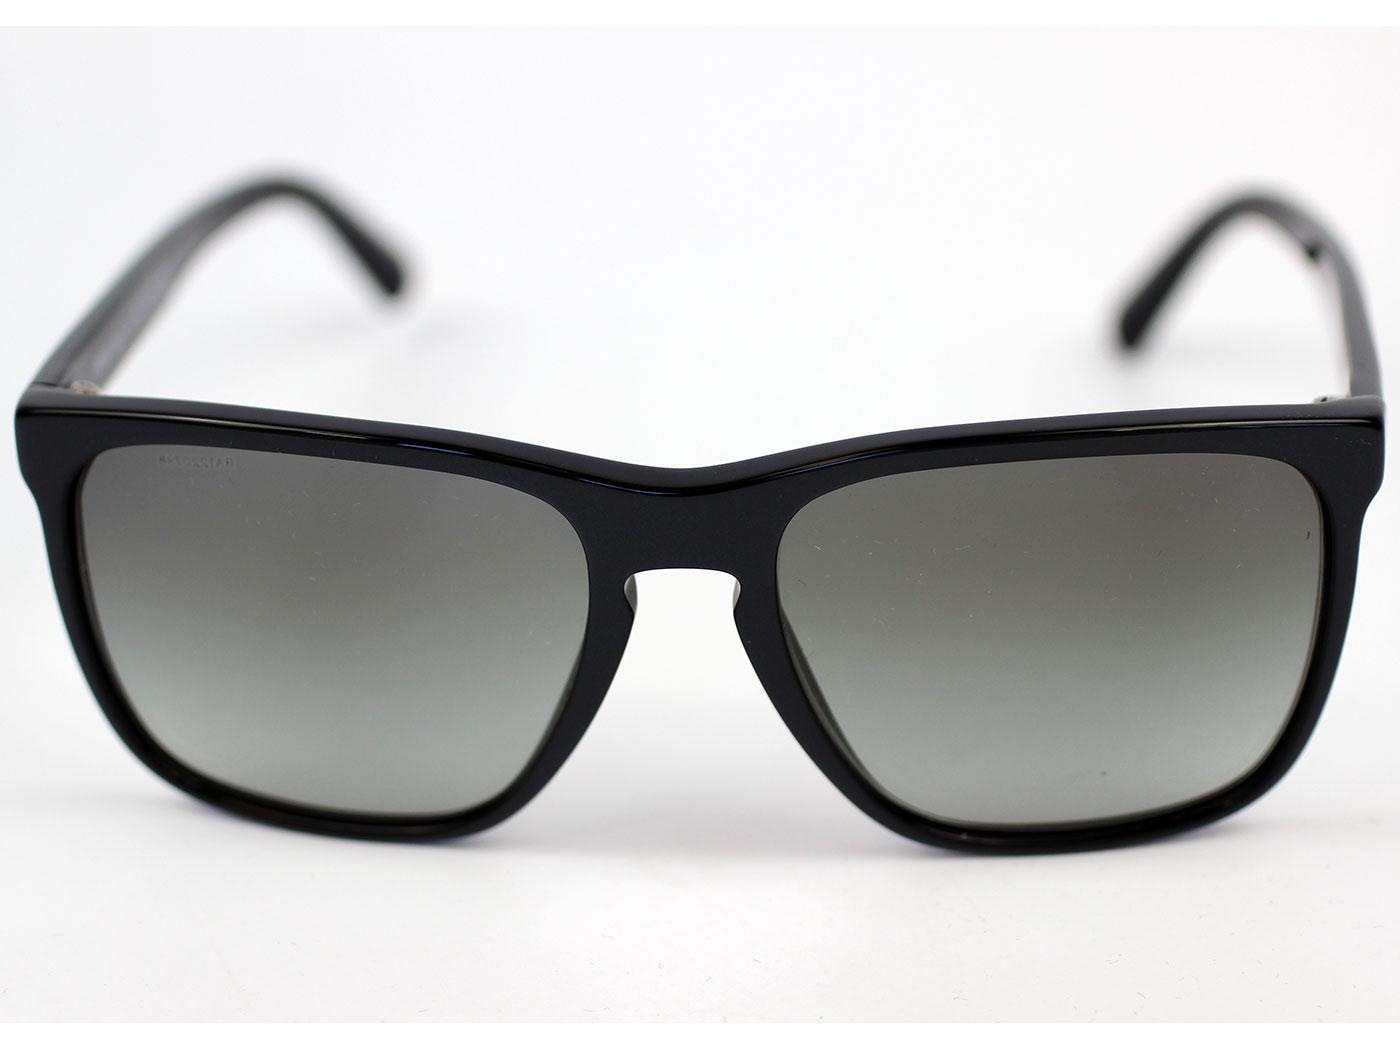 Giorgio Armani Retro Mod Square Sunglasses Wayfarers in Grey